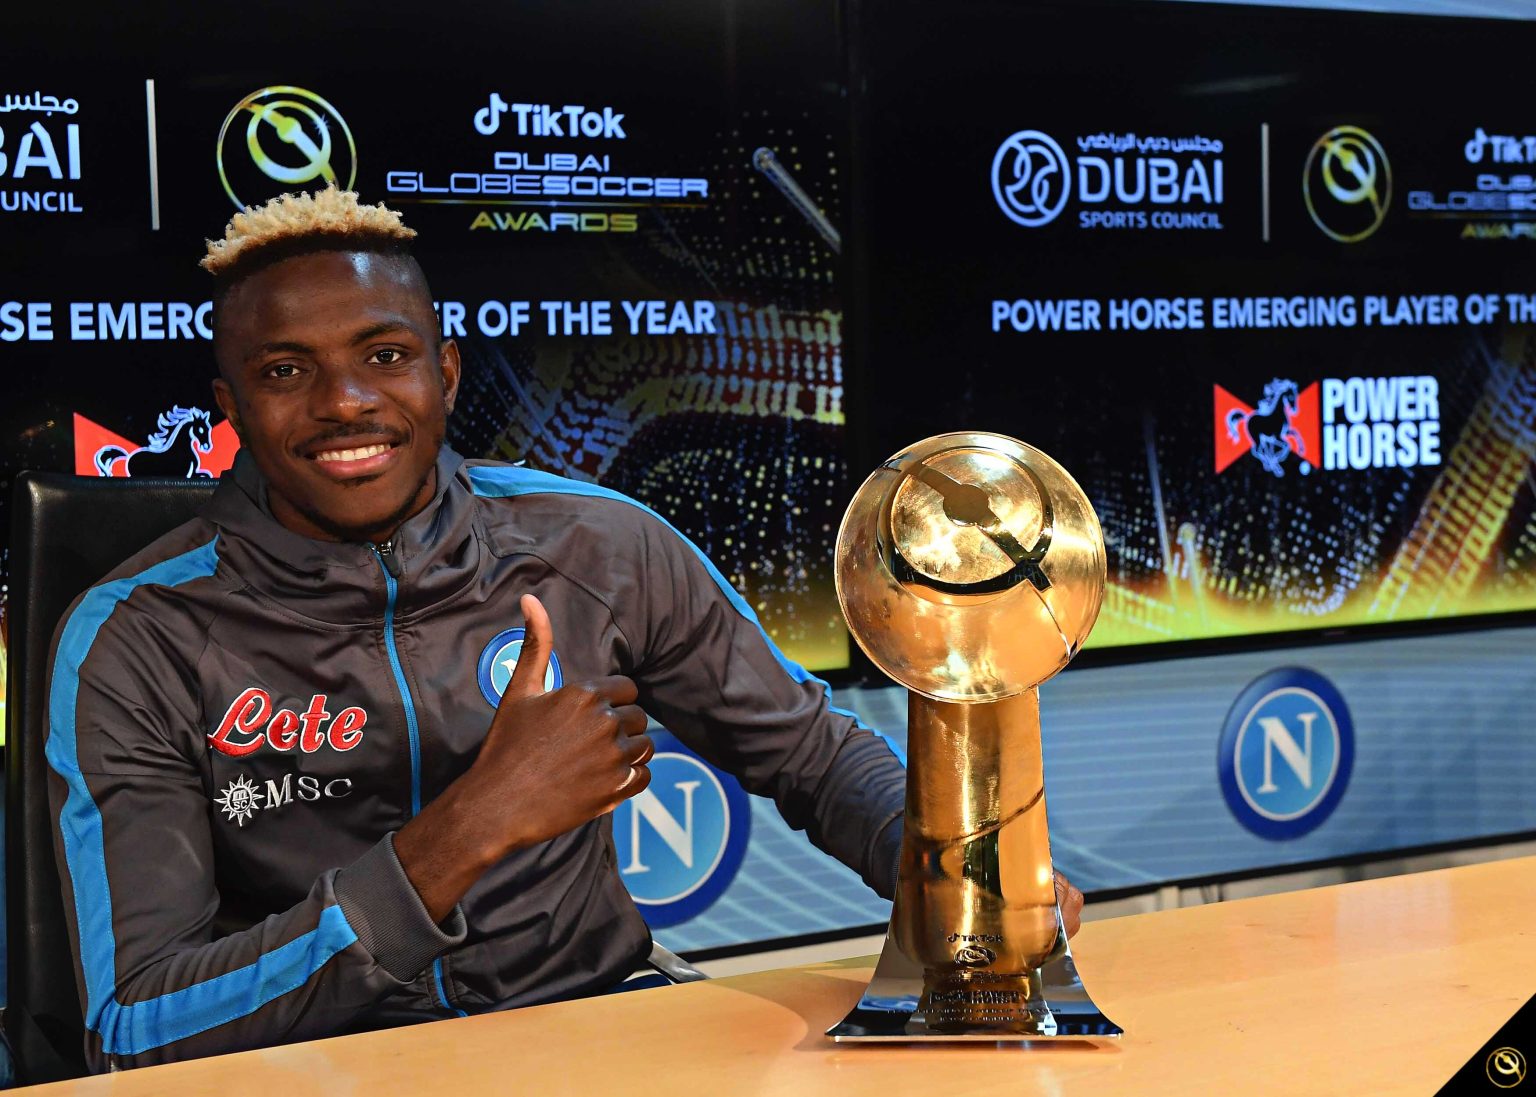 Osimhen reçoit le prix du joueur émergent de l’année de Globe Soccer